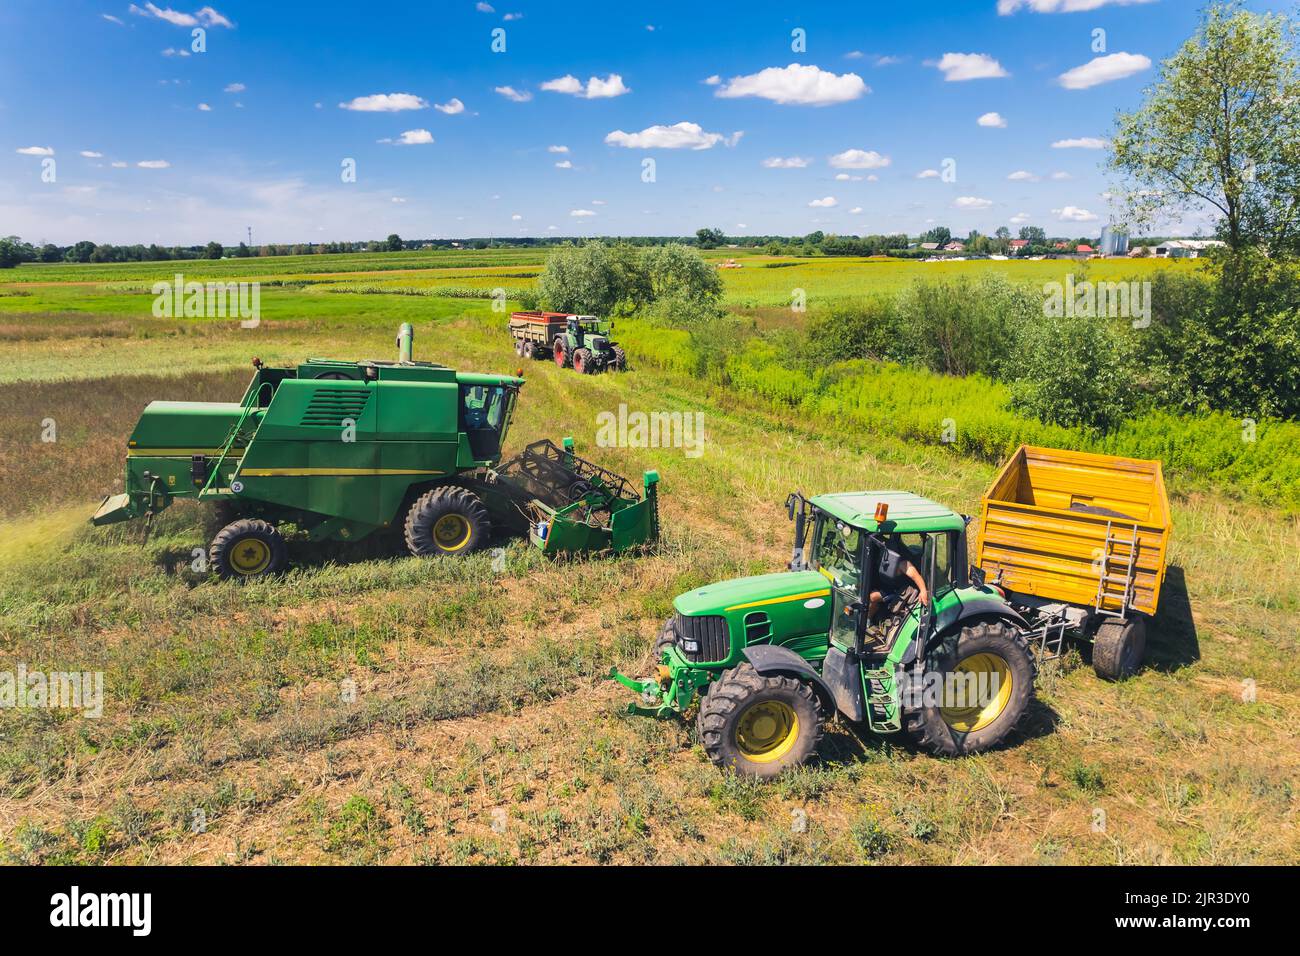 Vista aérea de tres máquinas agrícolas diferentes: Tractor, cosechadora, remolques, utilizadas por los operadores durante la cosecha. Tiempo soleado. . Fotografía de alta calidad Foto de stock